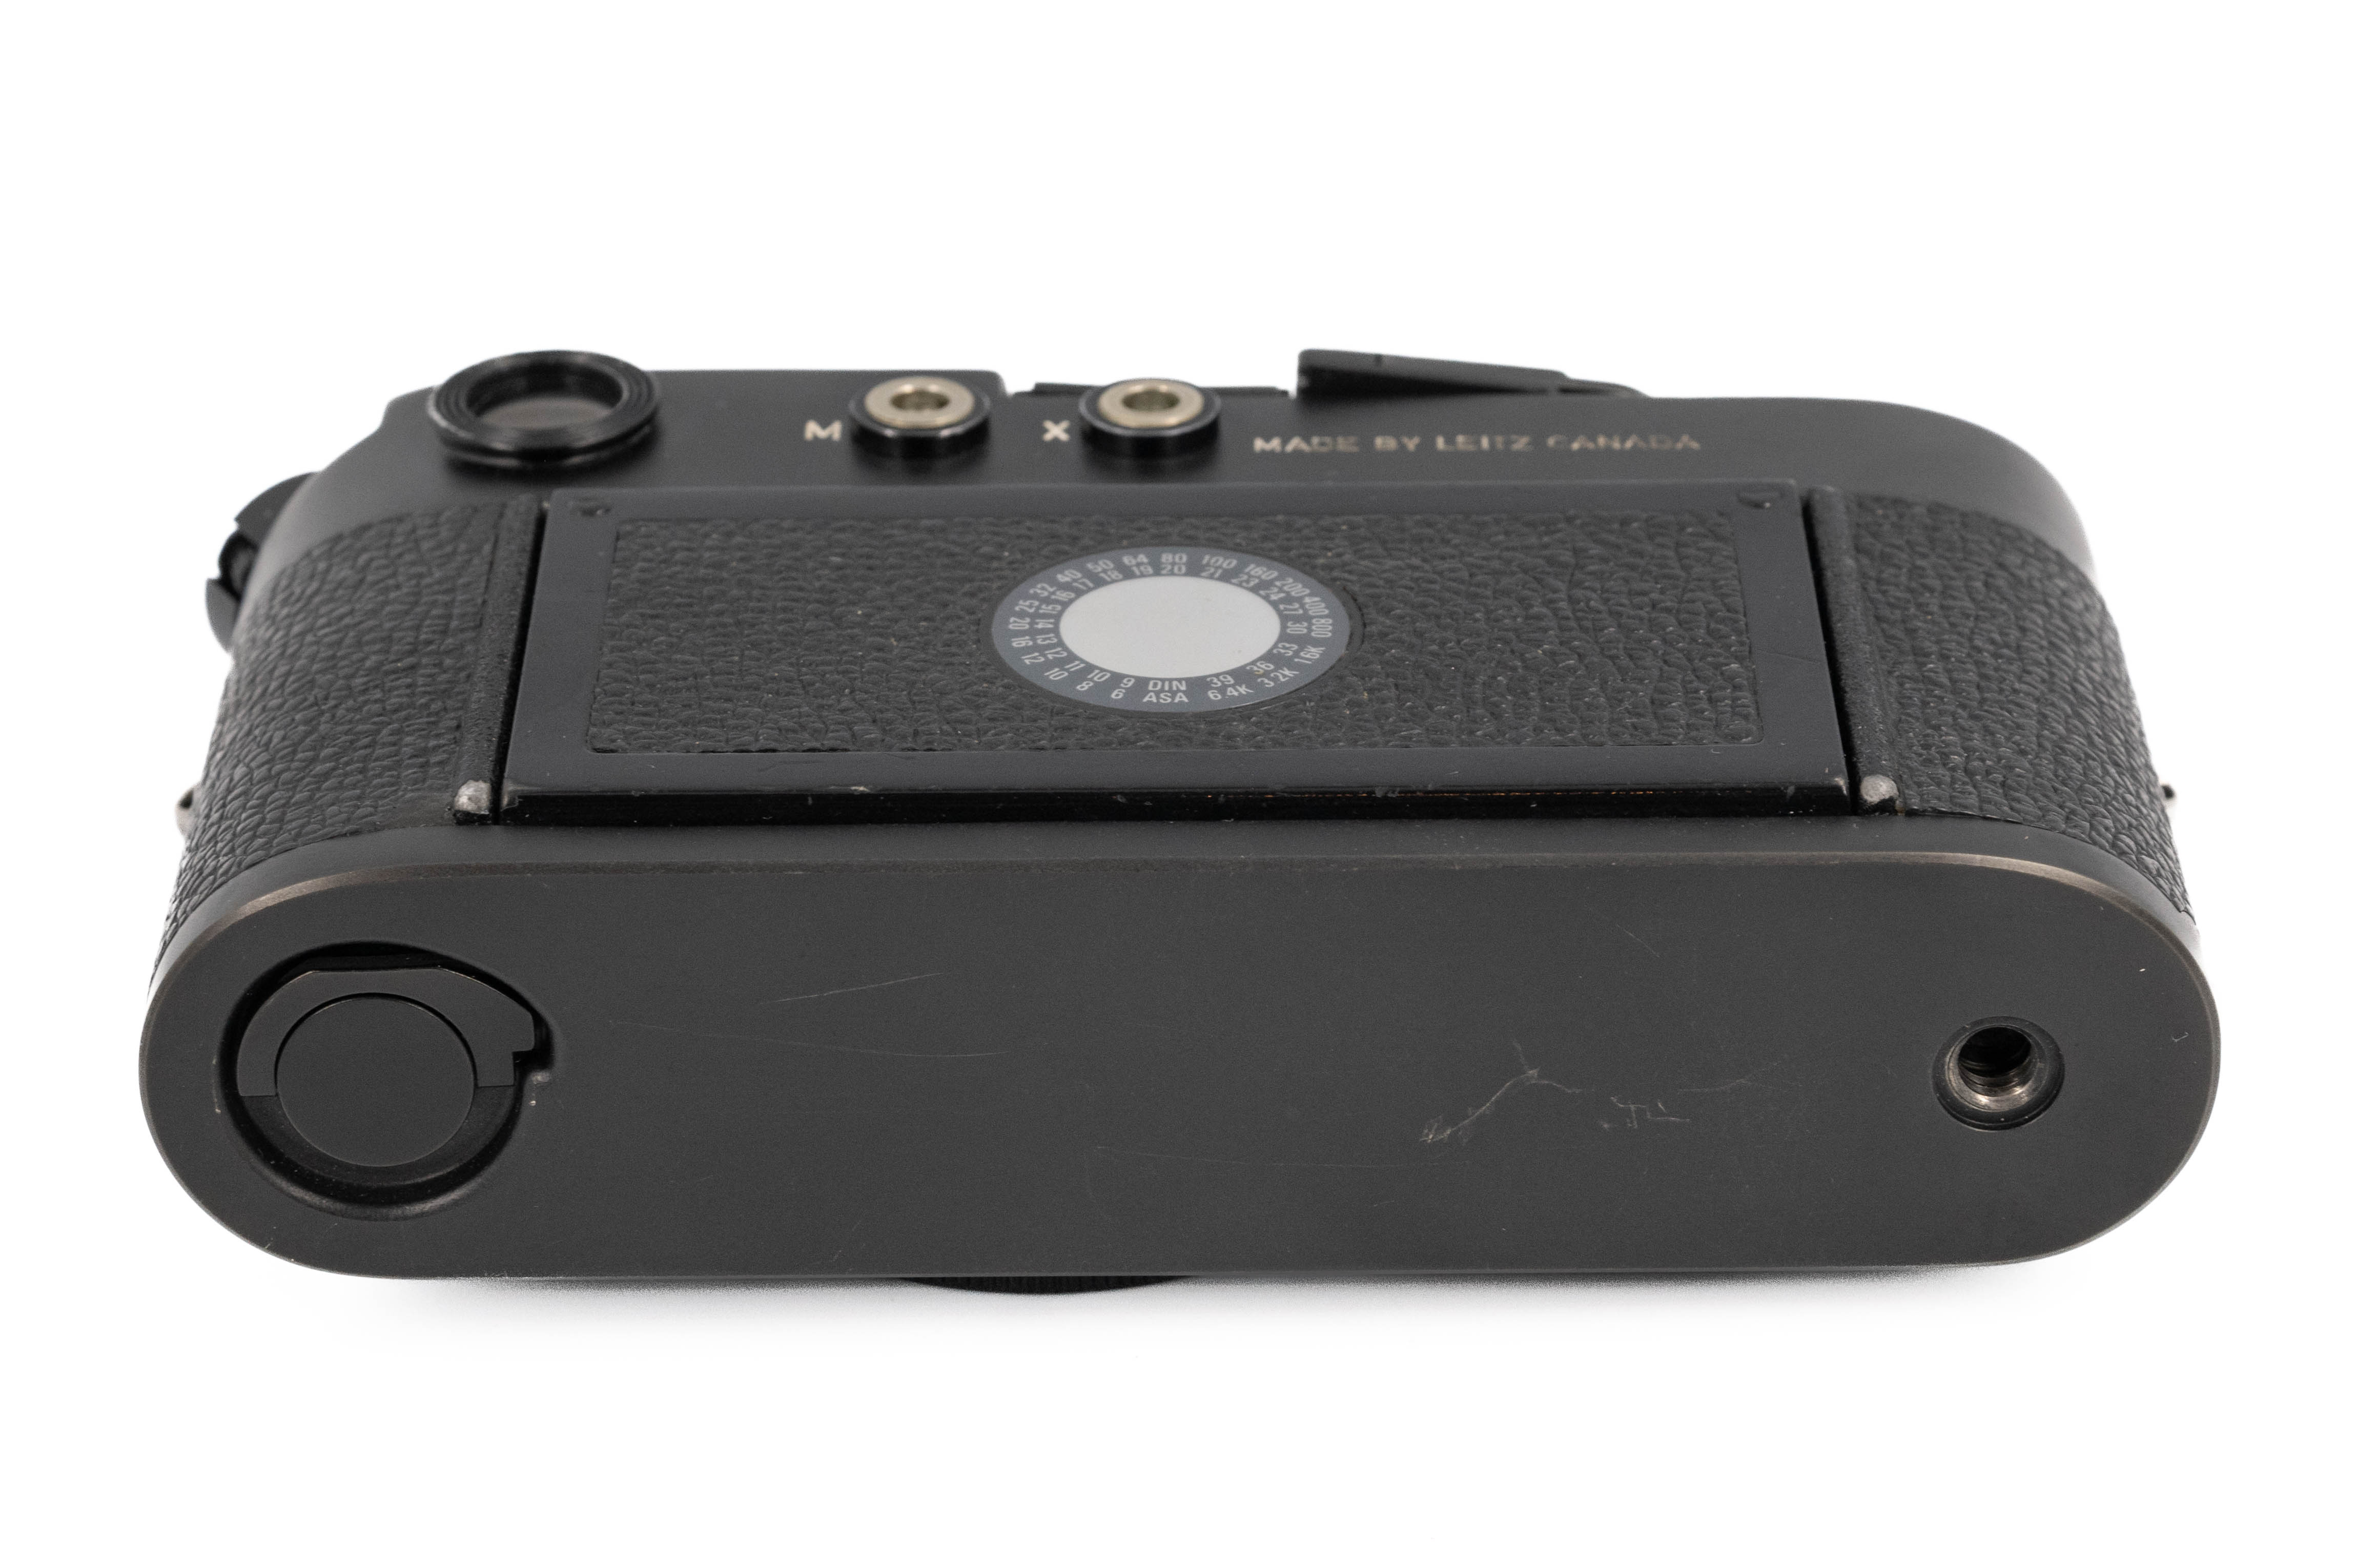 Leica M4-P Black 10415